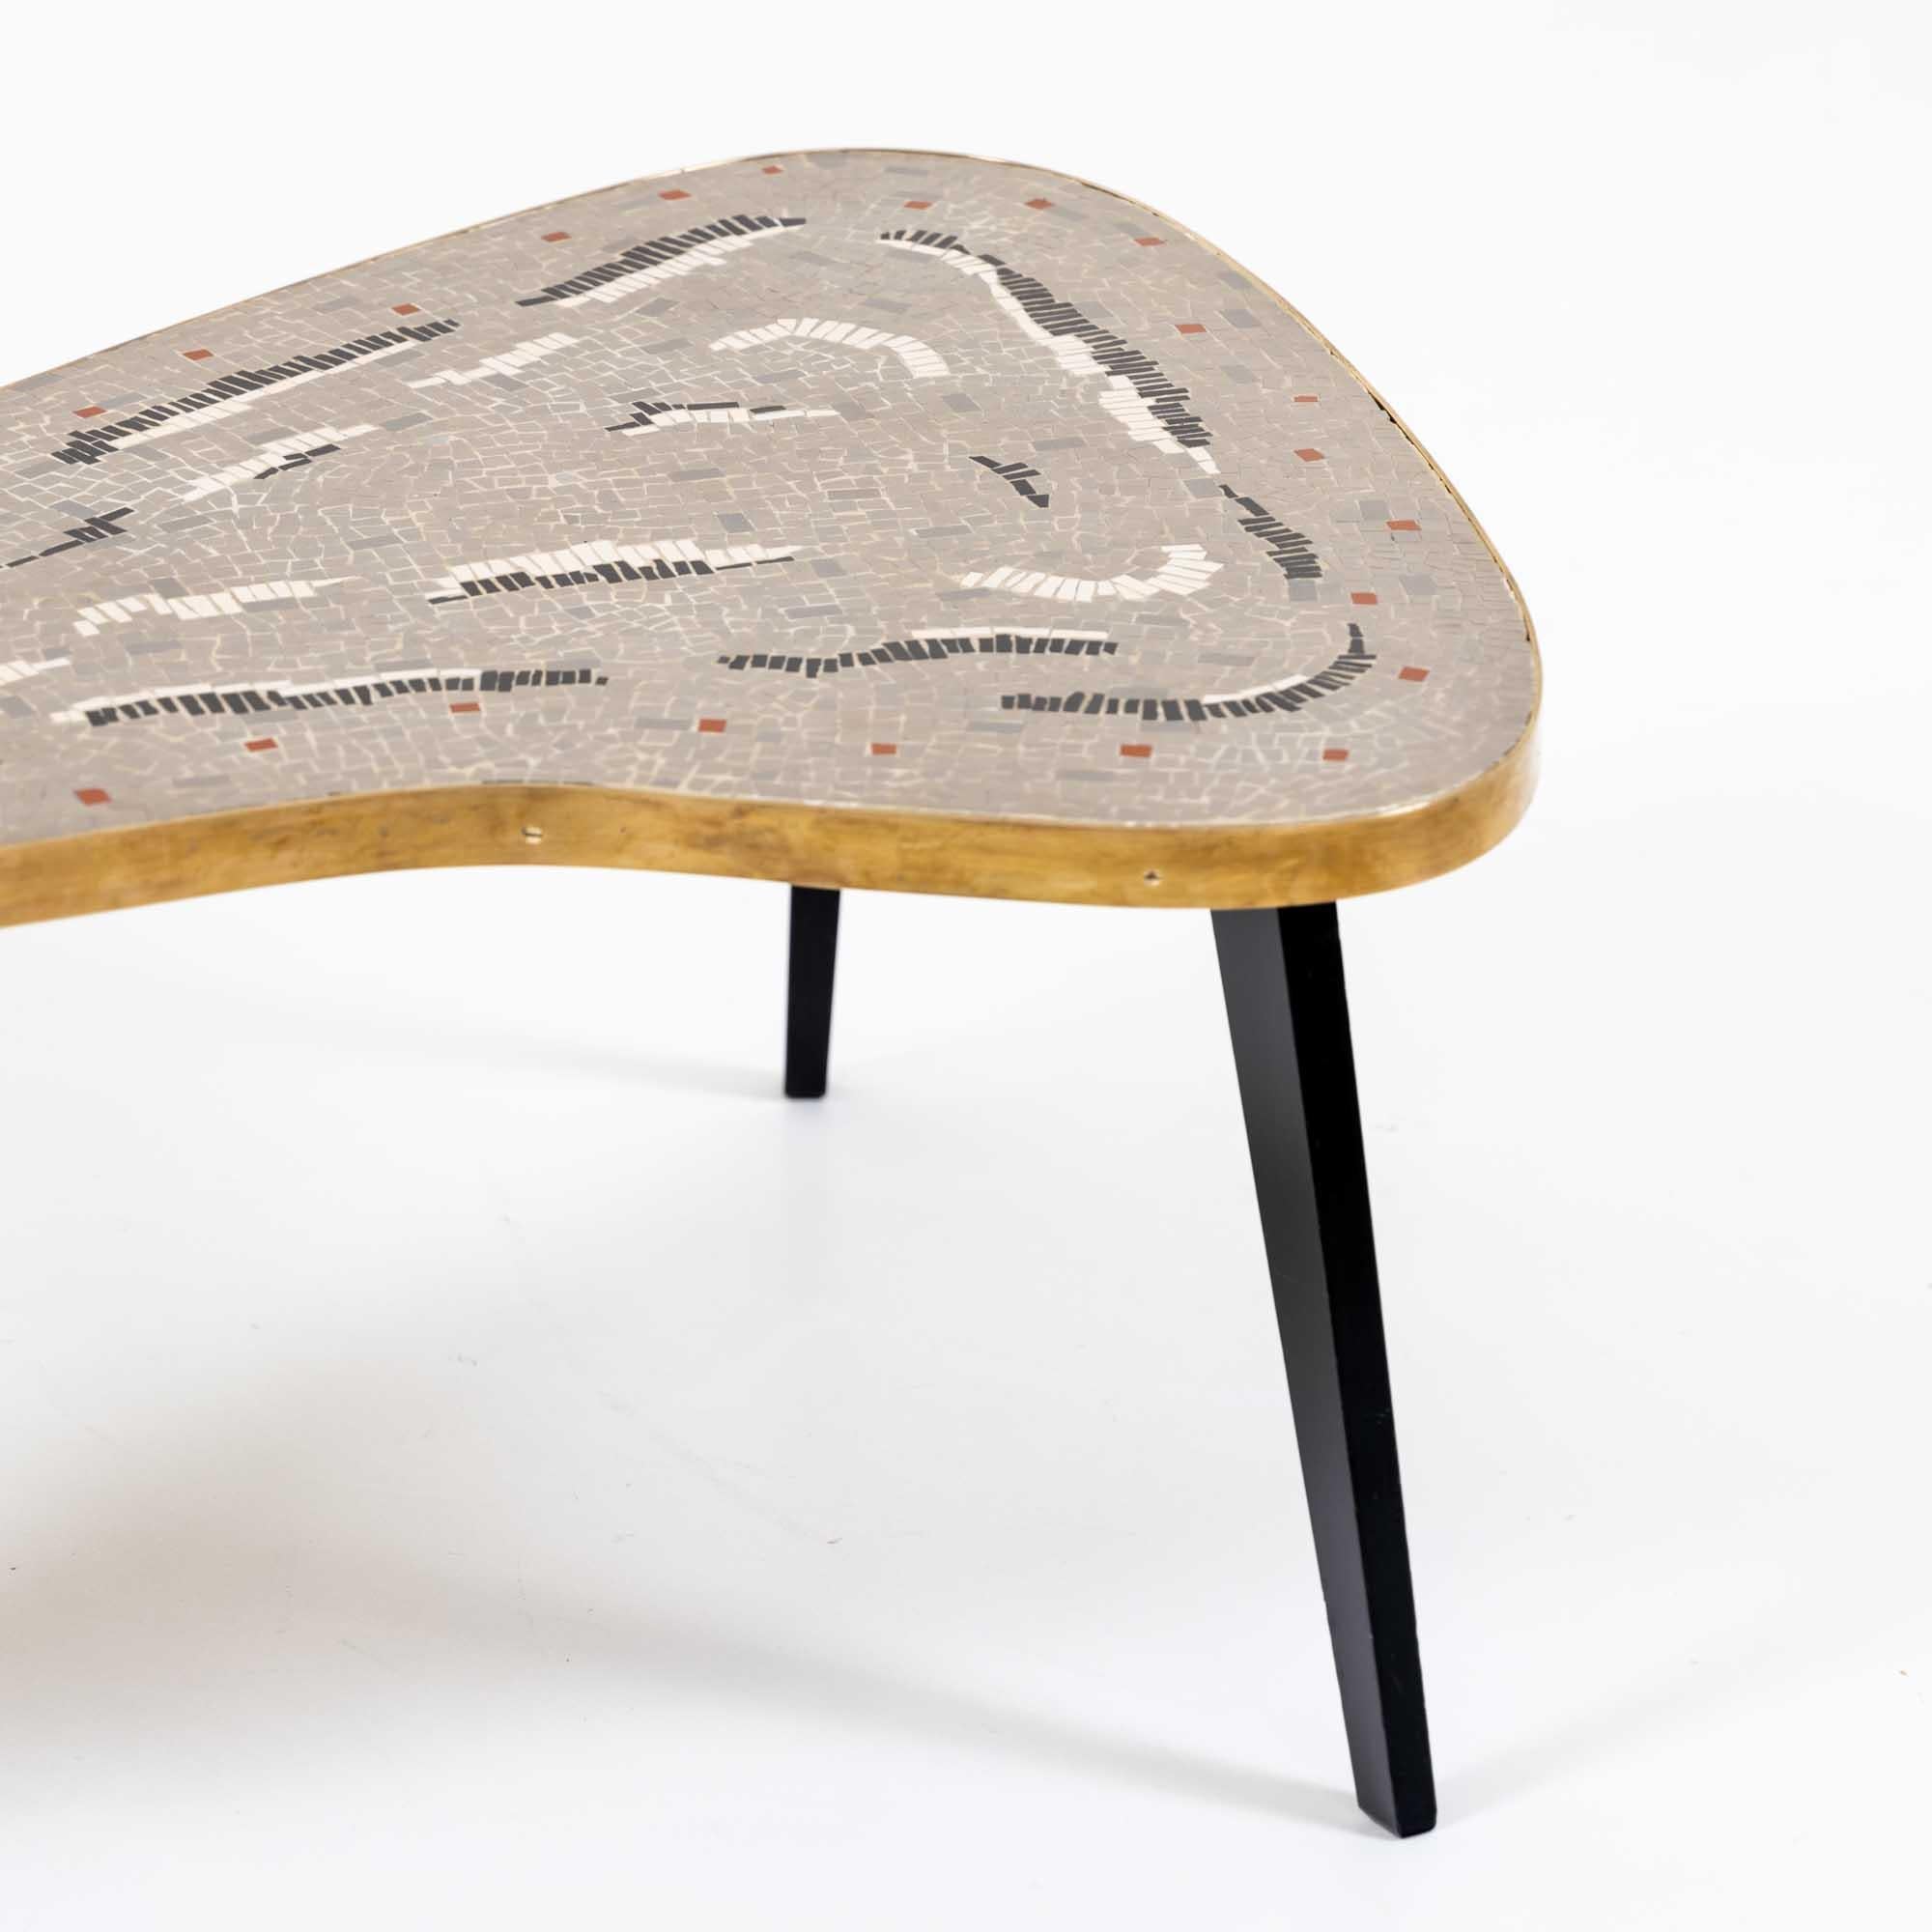 Couchtisch aus den 1960er Jahren auf drei konischen, ebonisierten Beinen. Die interessante Tischplatte ist in Form eines Bumerangs gestaltet und mit einem breiten, flachen Messingstreifen eingefasst. Das Highlight ist die graue Mosaikplatte, die mit